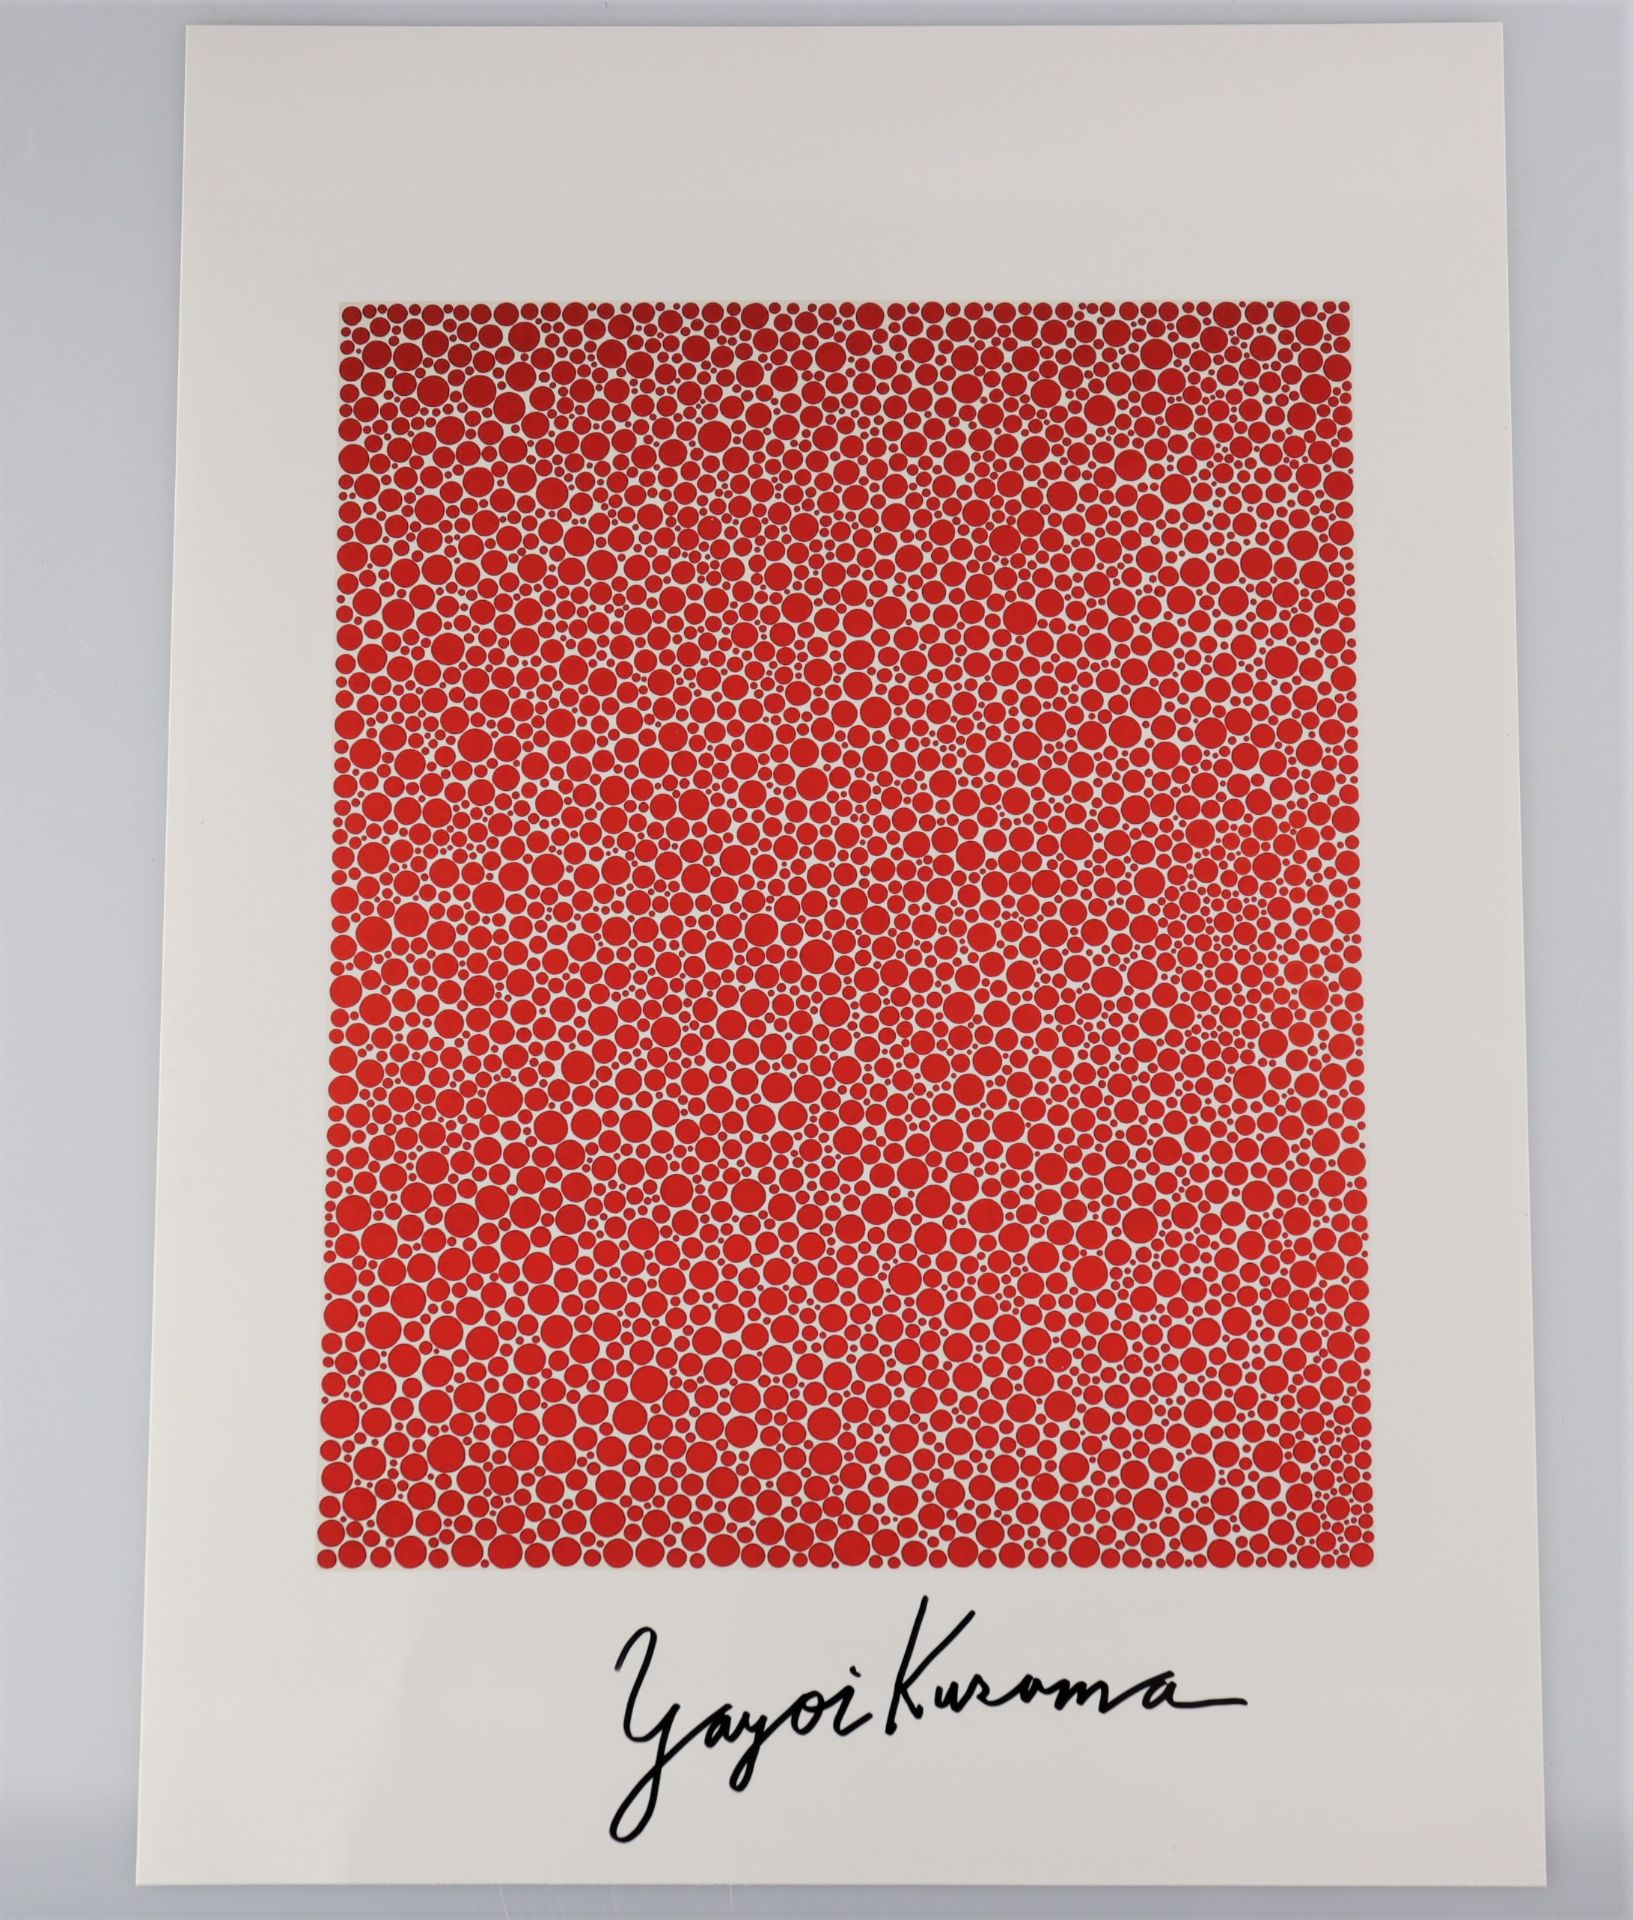 Yayoi Kusama. â€œDot Accumulationâ€. Color photography. Signed "Yayoi Kusama" in black marker.